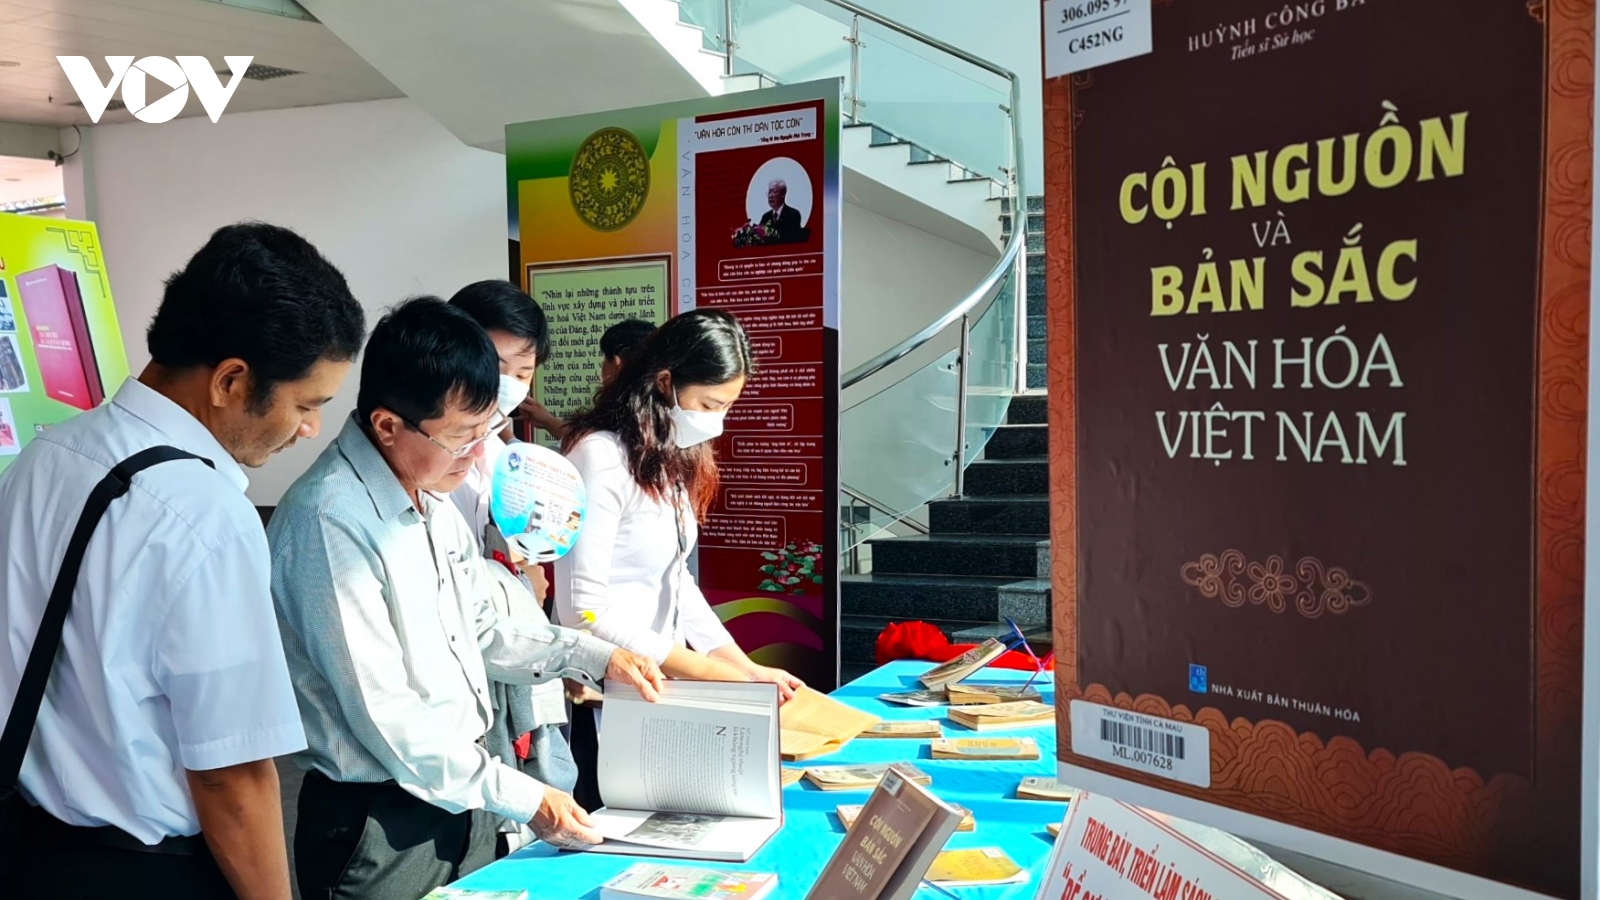 Cà Mau triển lãm tư liệu, sách với chủ đề 80 năm ra đời “Đề cương văn hóa Việt Nam”